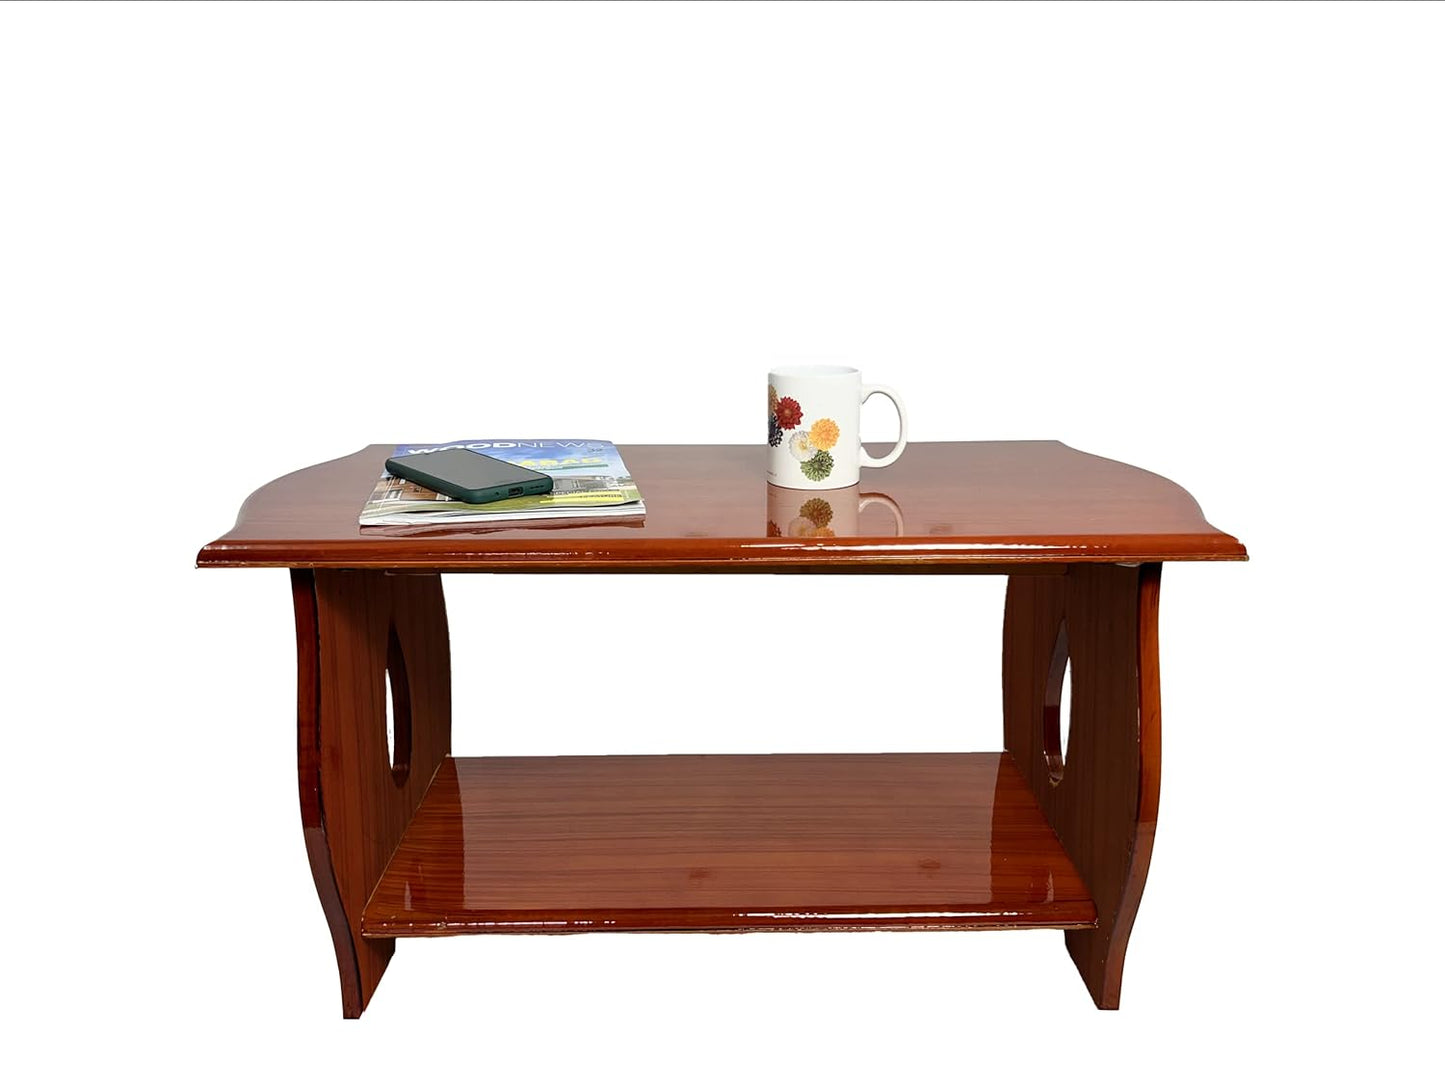 Pedpix® Engineered Wood Coffee Table (Teak Finish) Wooden Tea Table| Teapot |DIY Wooden Table Engineered Wood Coffee Table